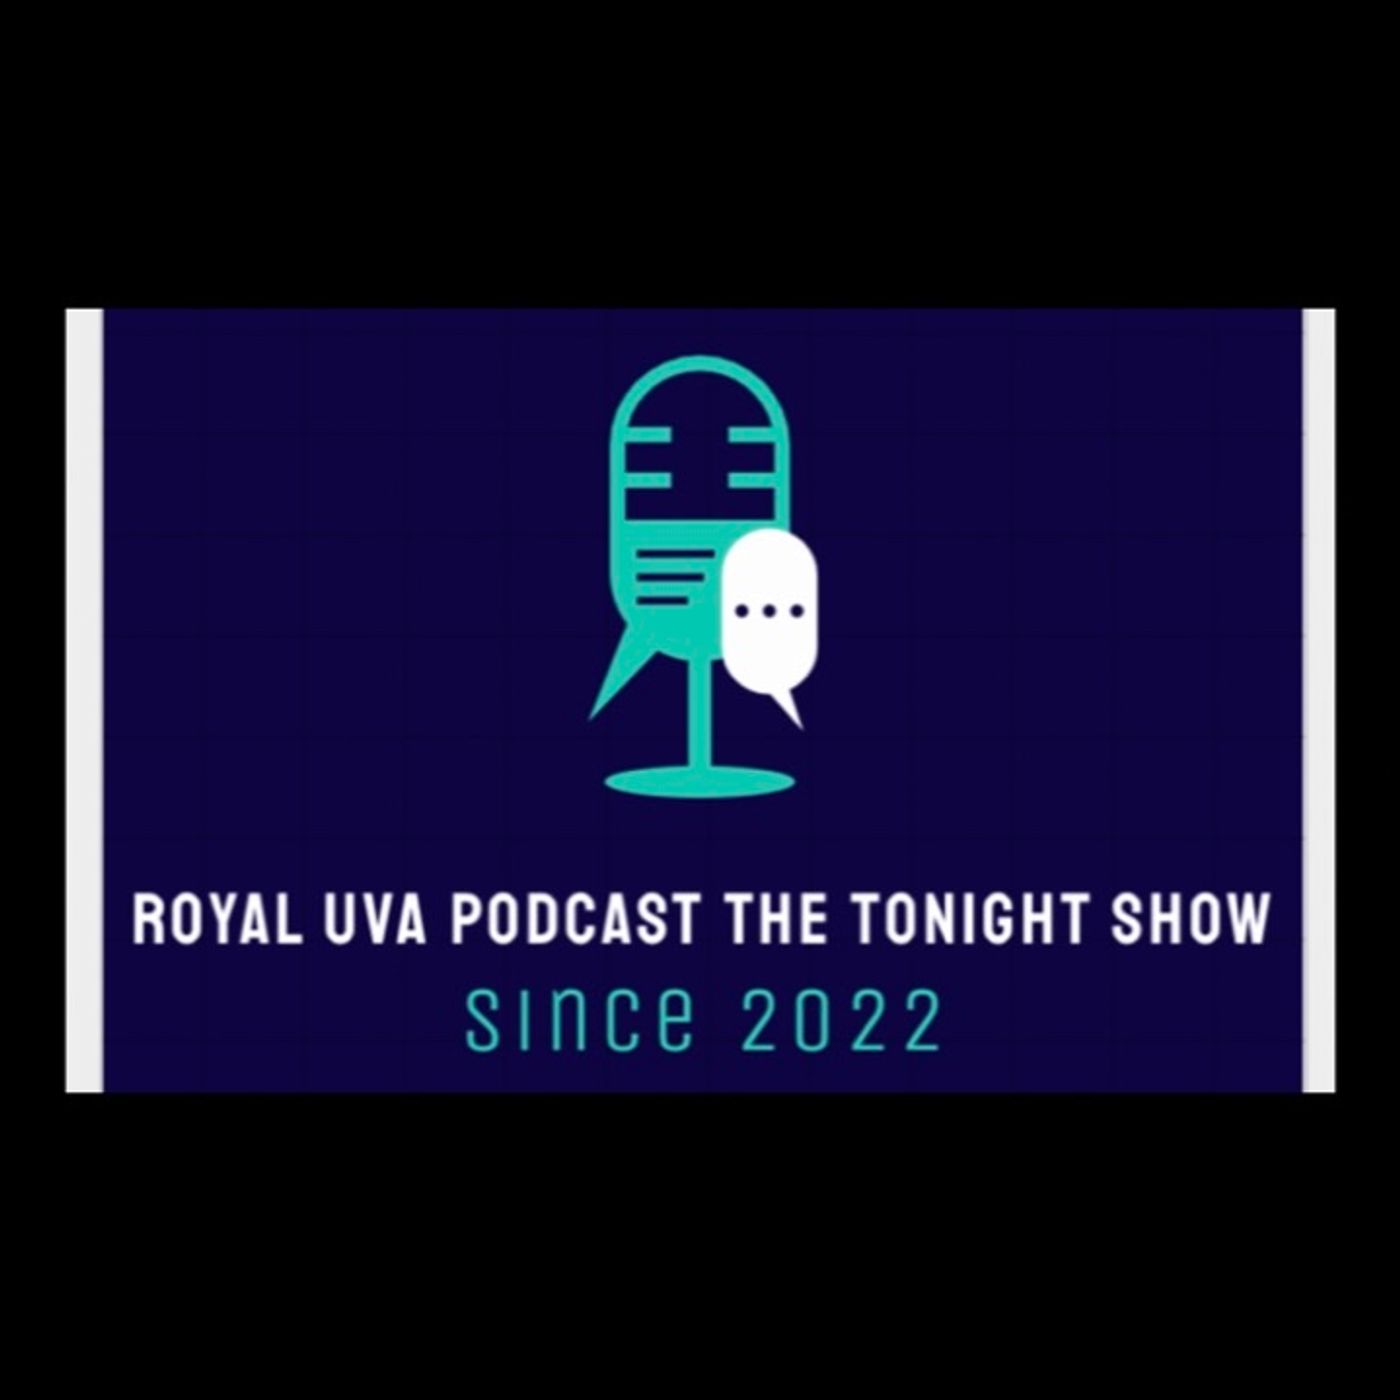 Royal UVA Podcast the Tonight show